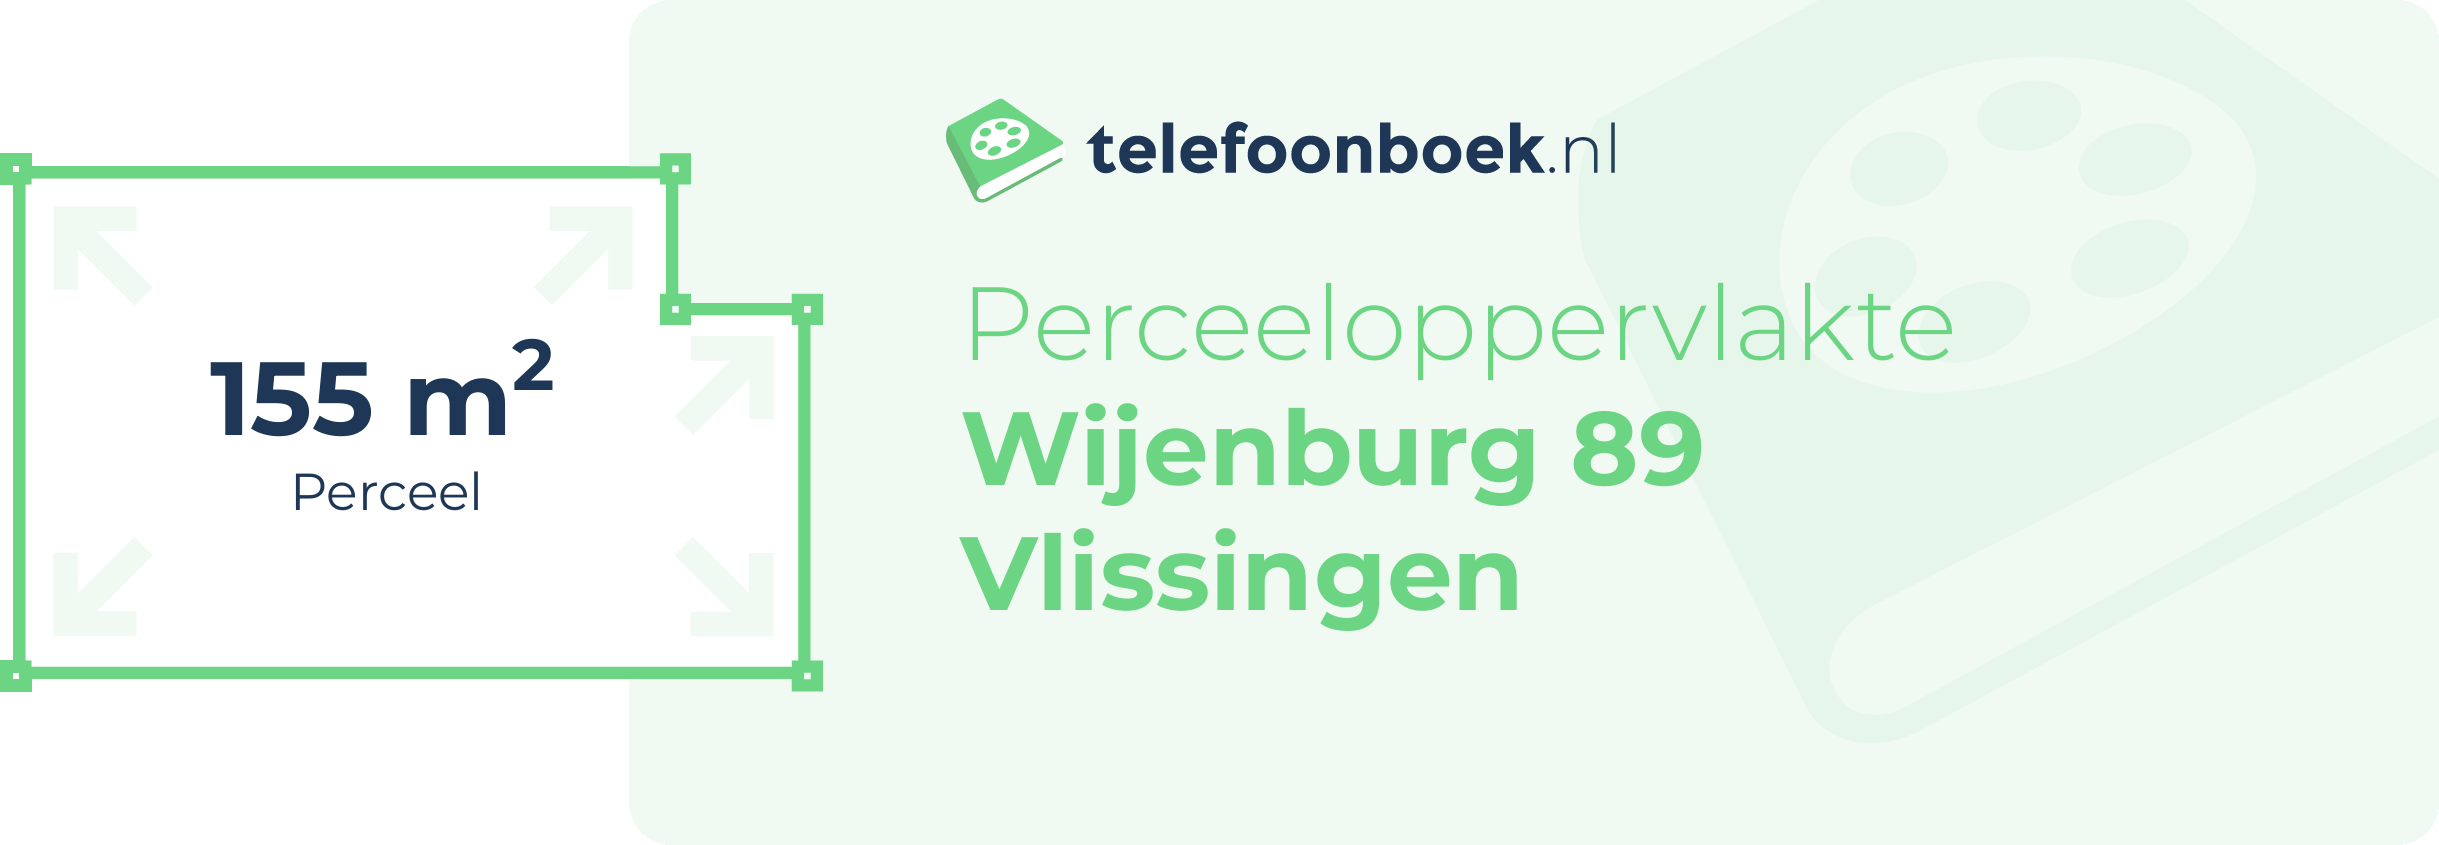 Perceeloppervlakte Wijenburg 89 Vlissingen